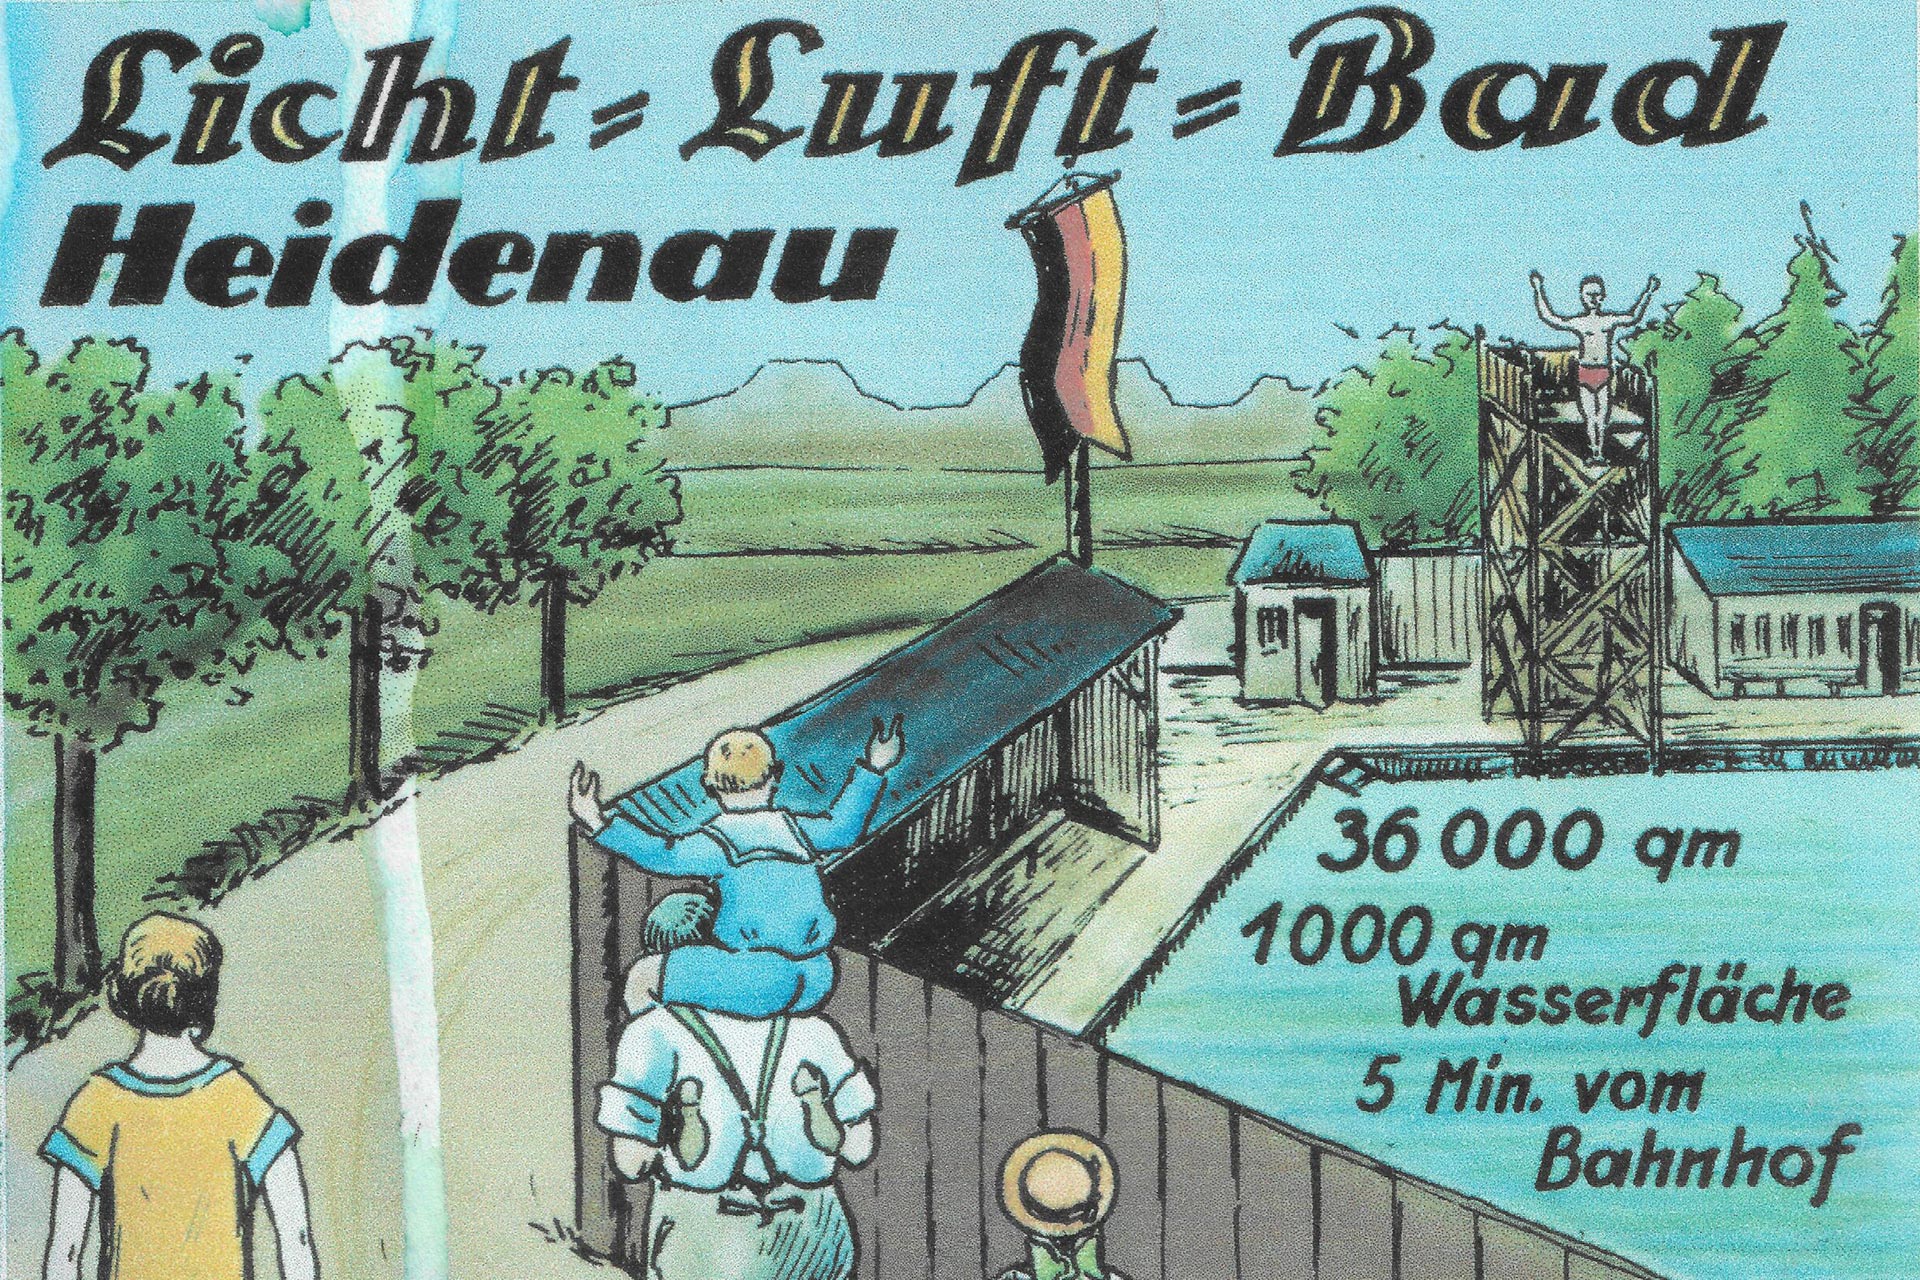 Postkarte Licht-Luft-Bad Heidenau von 1922 © Albert-Schwarz-Bad